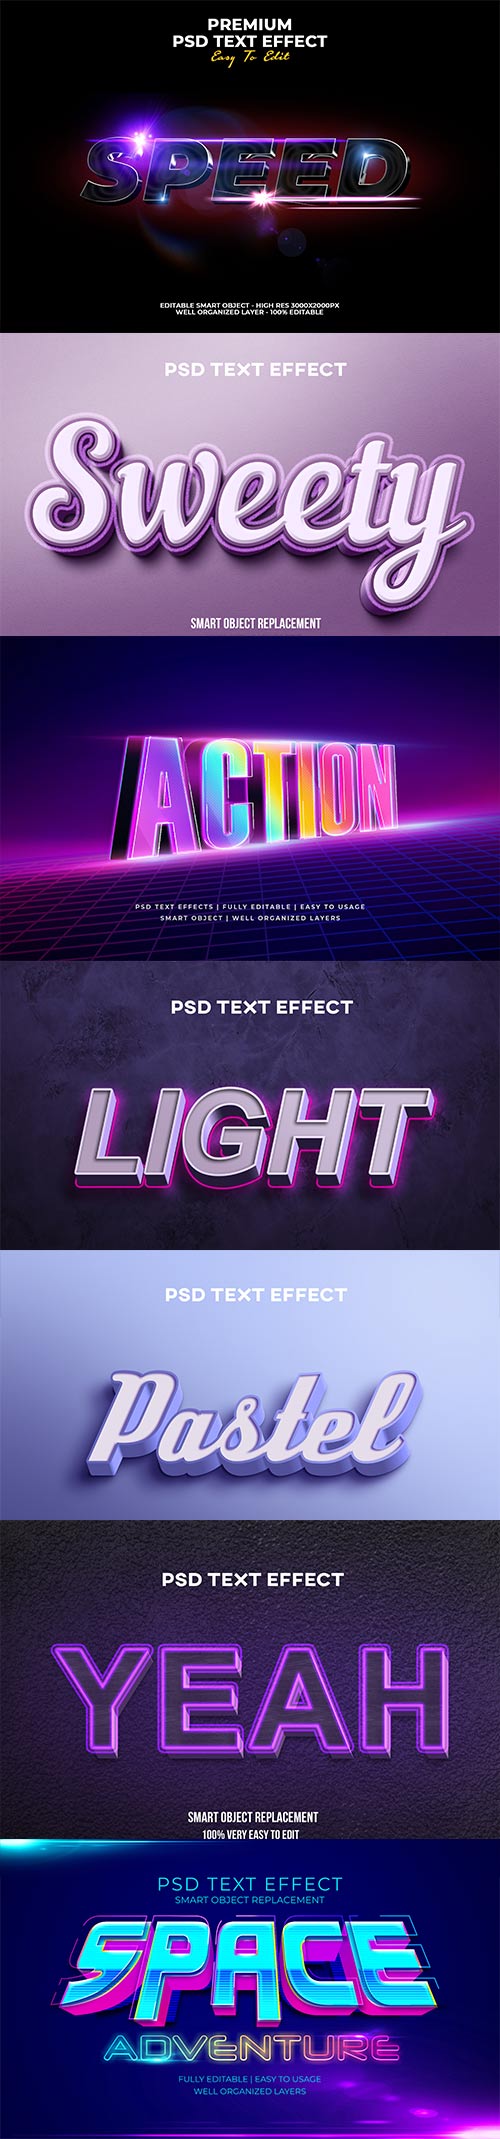 Psd text effect set vol 24